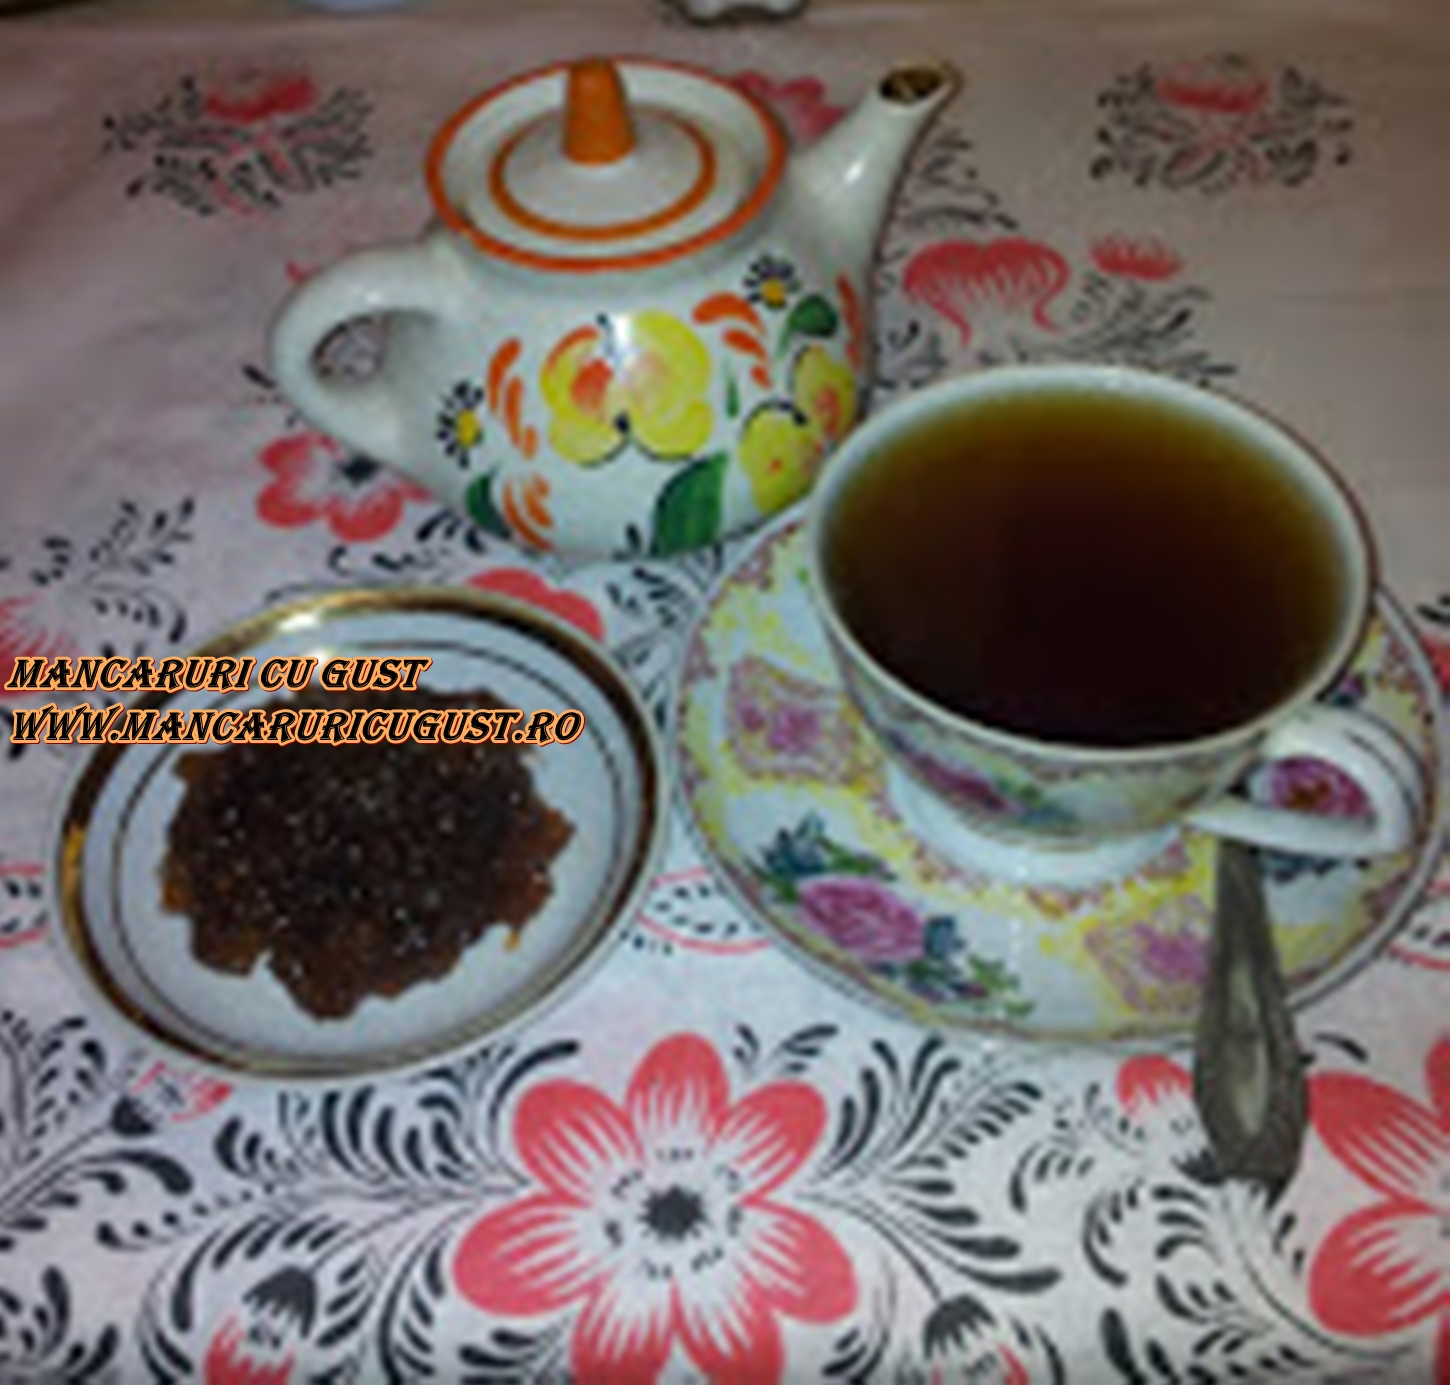 Ceaiul beneficii si contraindicatii articol mancaruricugust